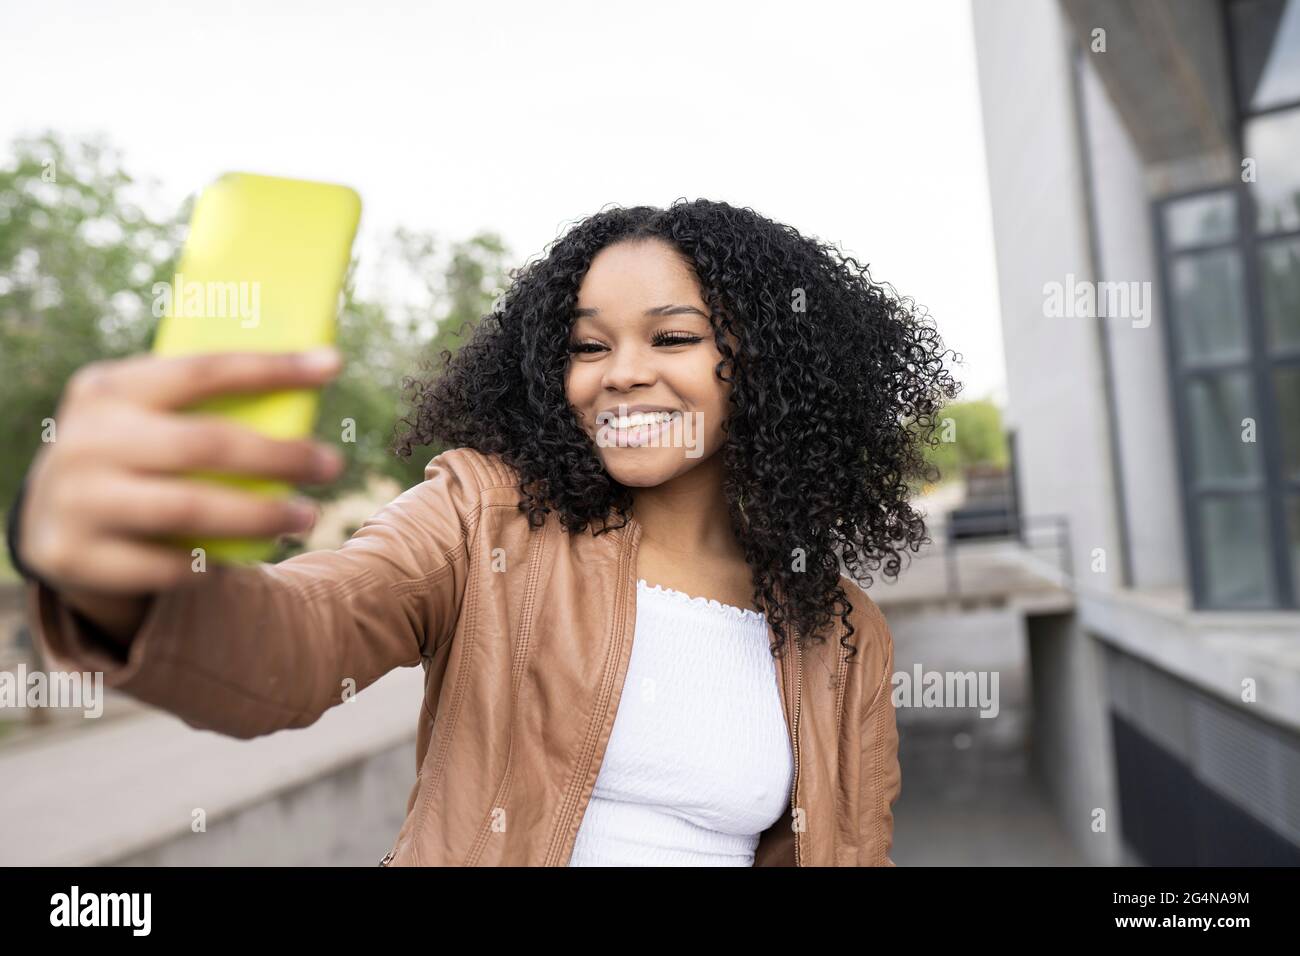 Optimistische afroamerikanische Frau mit lockigen Haaren, die auf dem Smartphone Selbstporträt aufnimmt, während sie auf der Straße in der Nähe des Gebäudes auf unscharfem Hintergrund steht Stockfoto